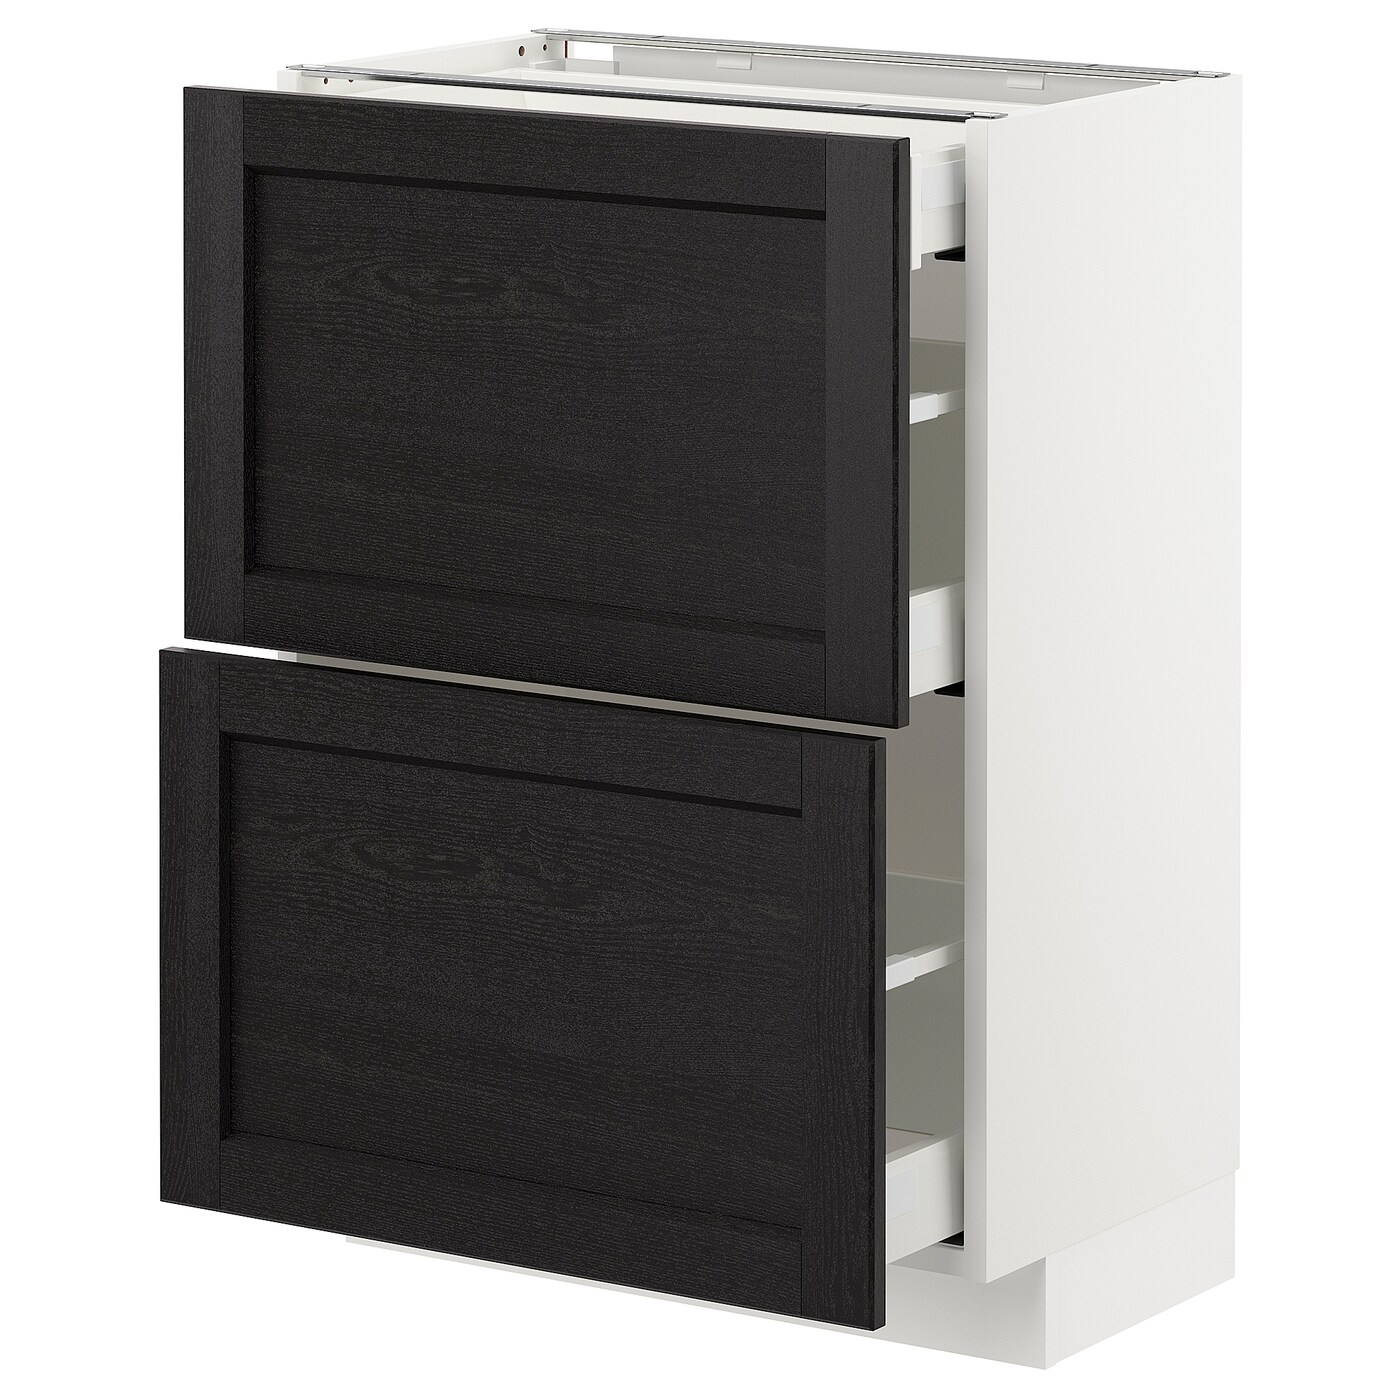 Напольный кухонный шкаф  - IKEA METOD MAXIMERA, 88x39,5x60см, черный/белый, МЕТОД МАКСИМЕРА ИКЕА